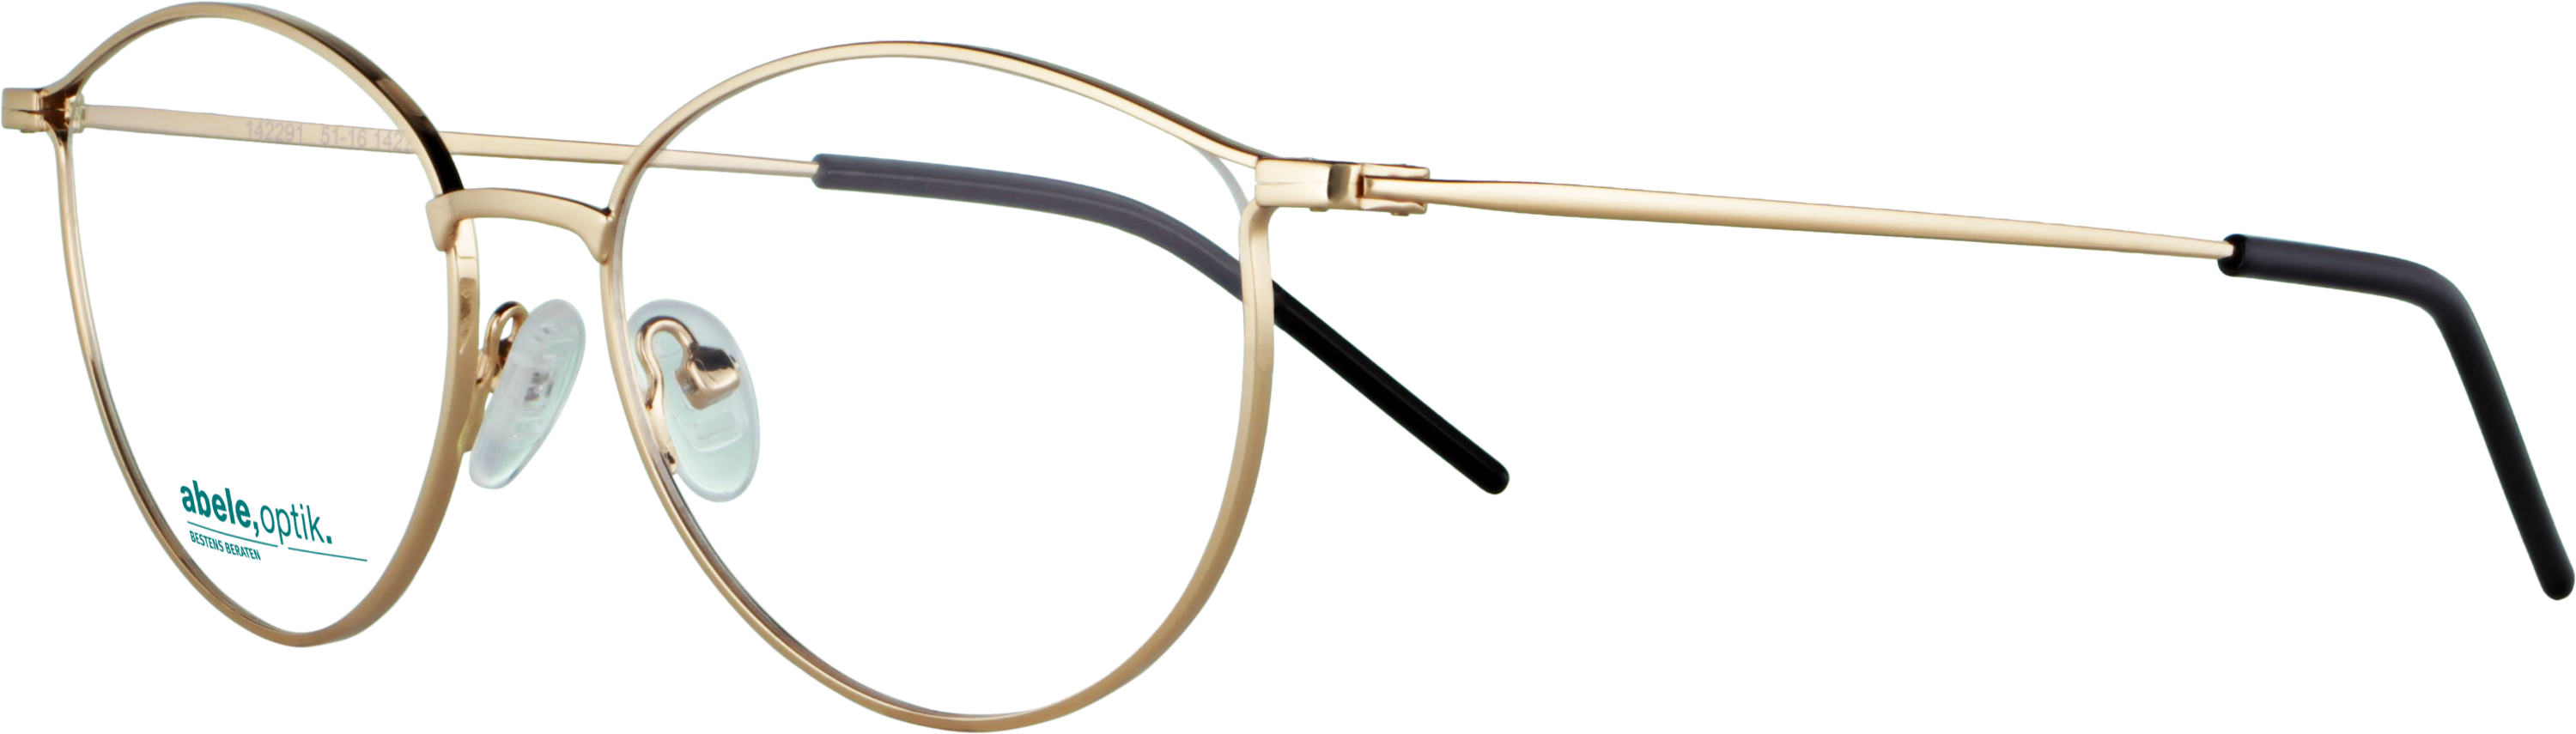 Das Bild zeigt die Korrektionsbrille 142291 von der Marke Abele Optik in gold.